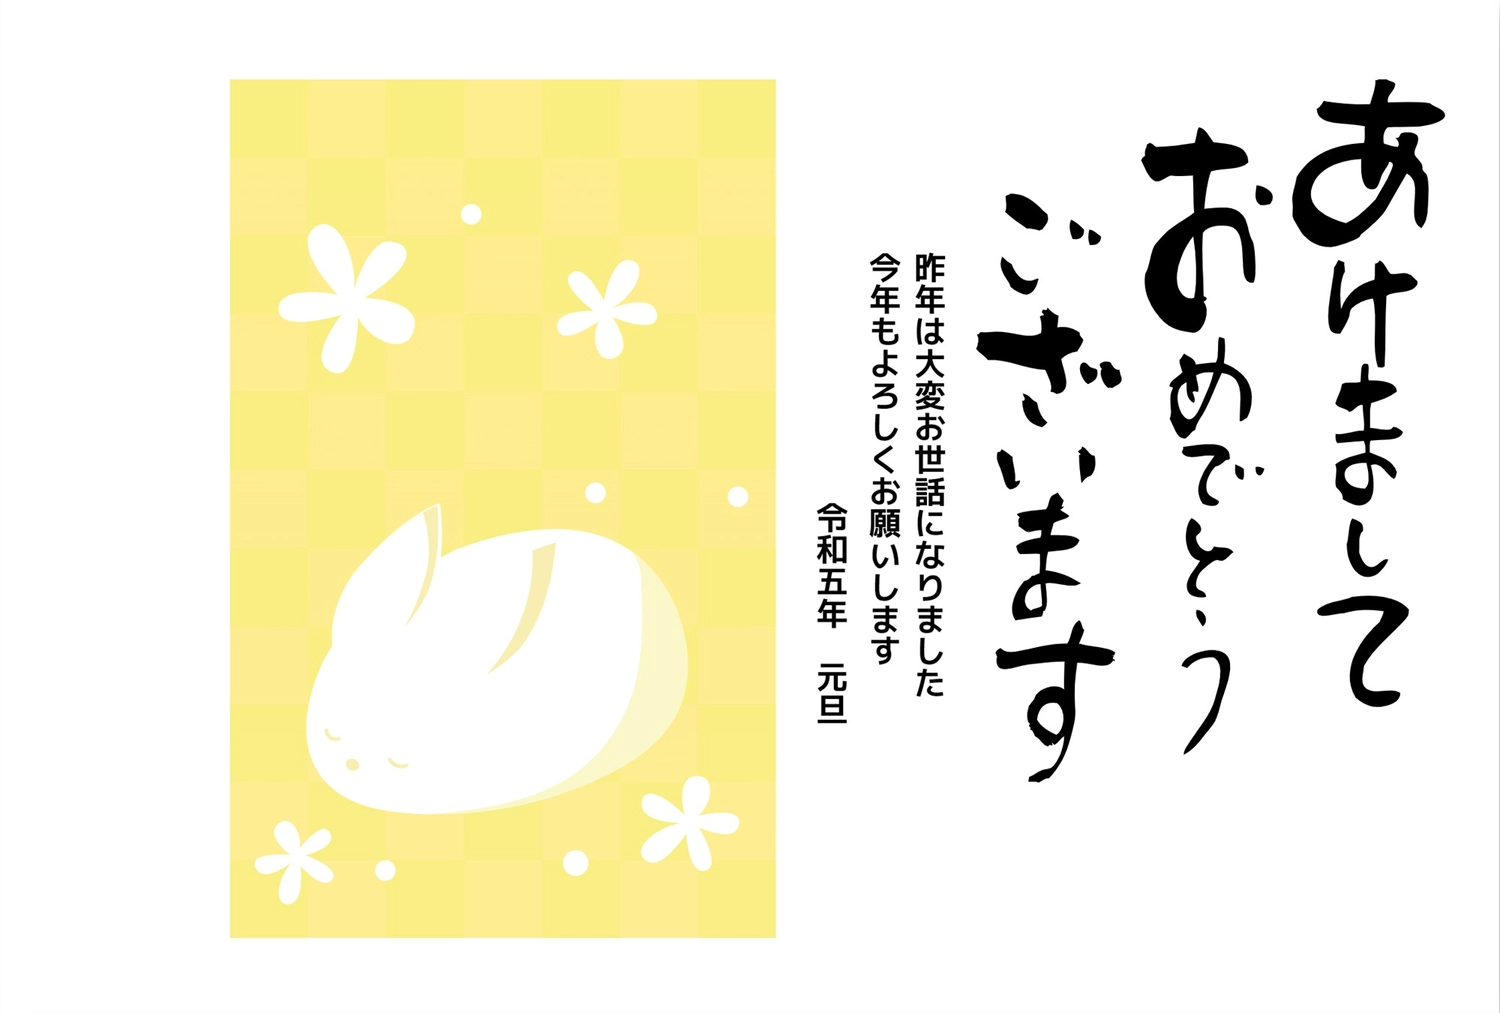 雪うさぎの年賀状, NEW YEAR, concord, rabbit, New Year Card template